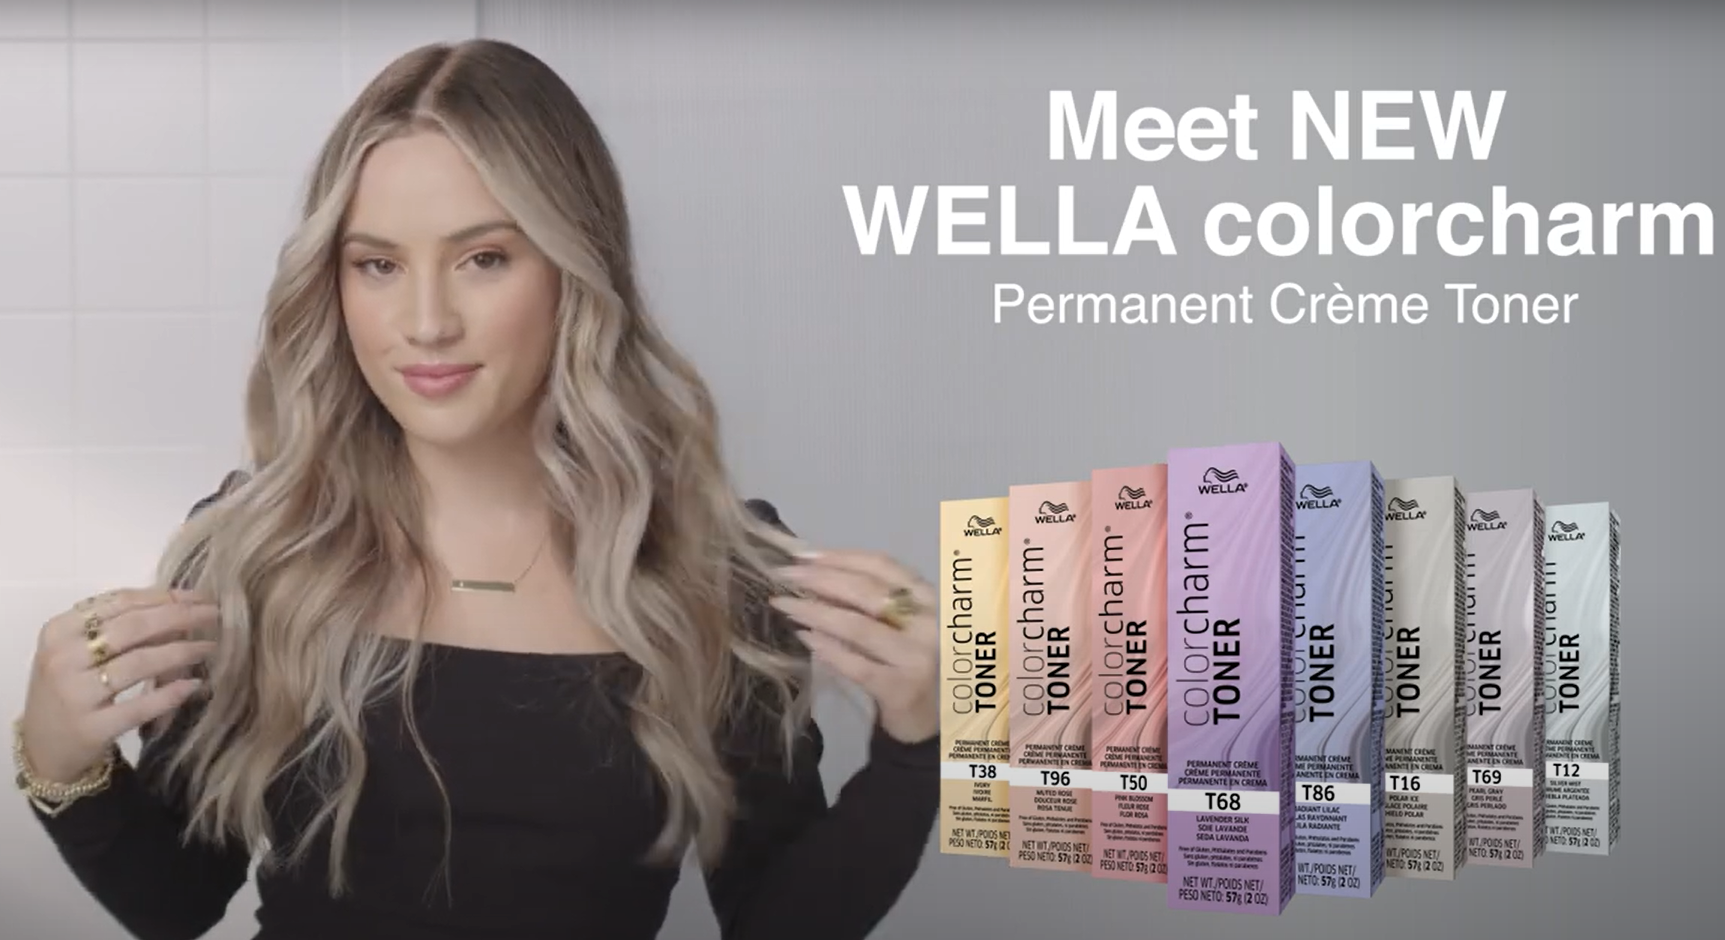 Meet WELLA colorcharm Permanent Crème Toner